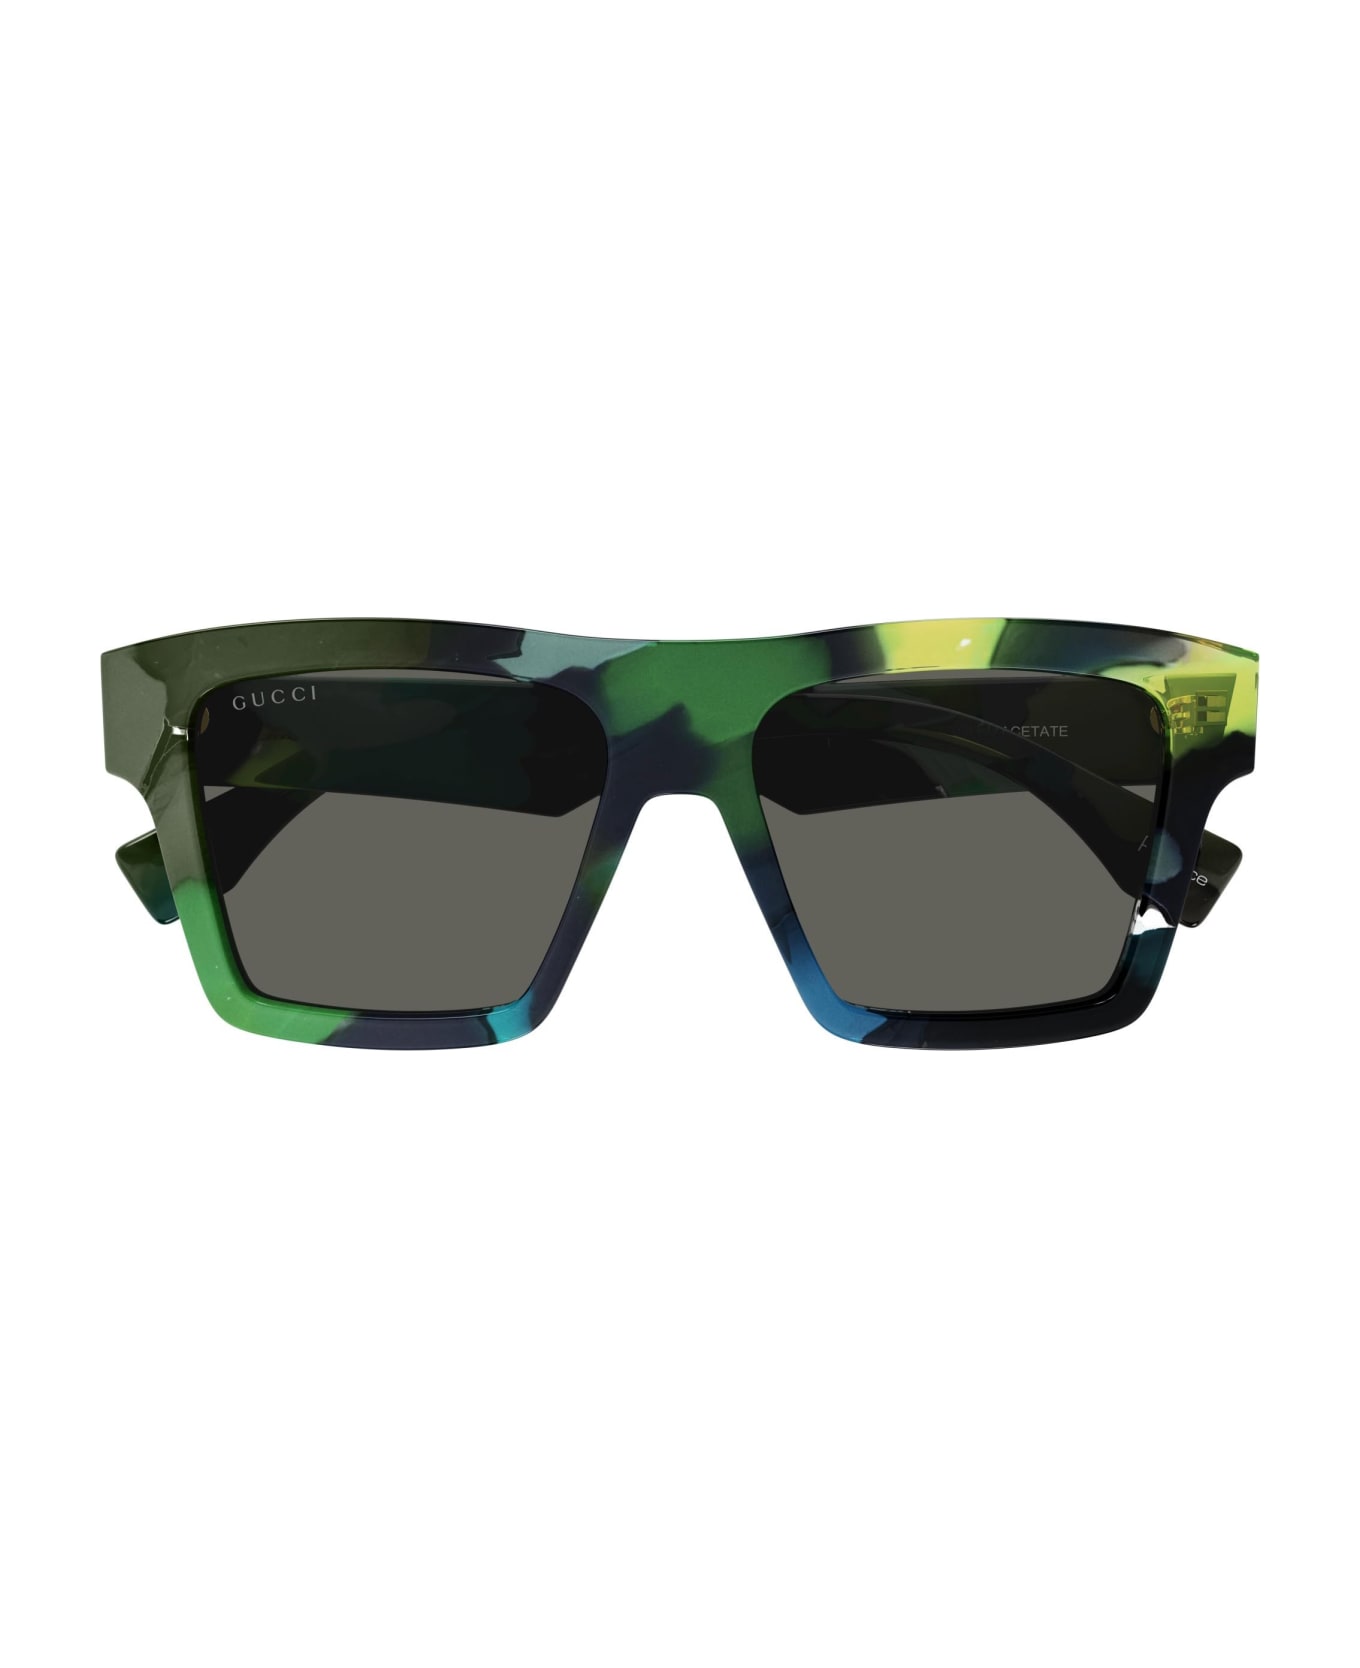 Gucci Eyewear Sunglasses - Verde/Grigio サングラス